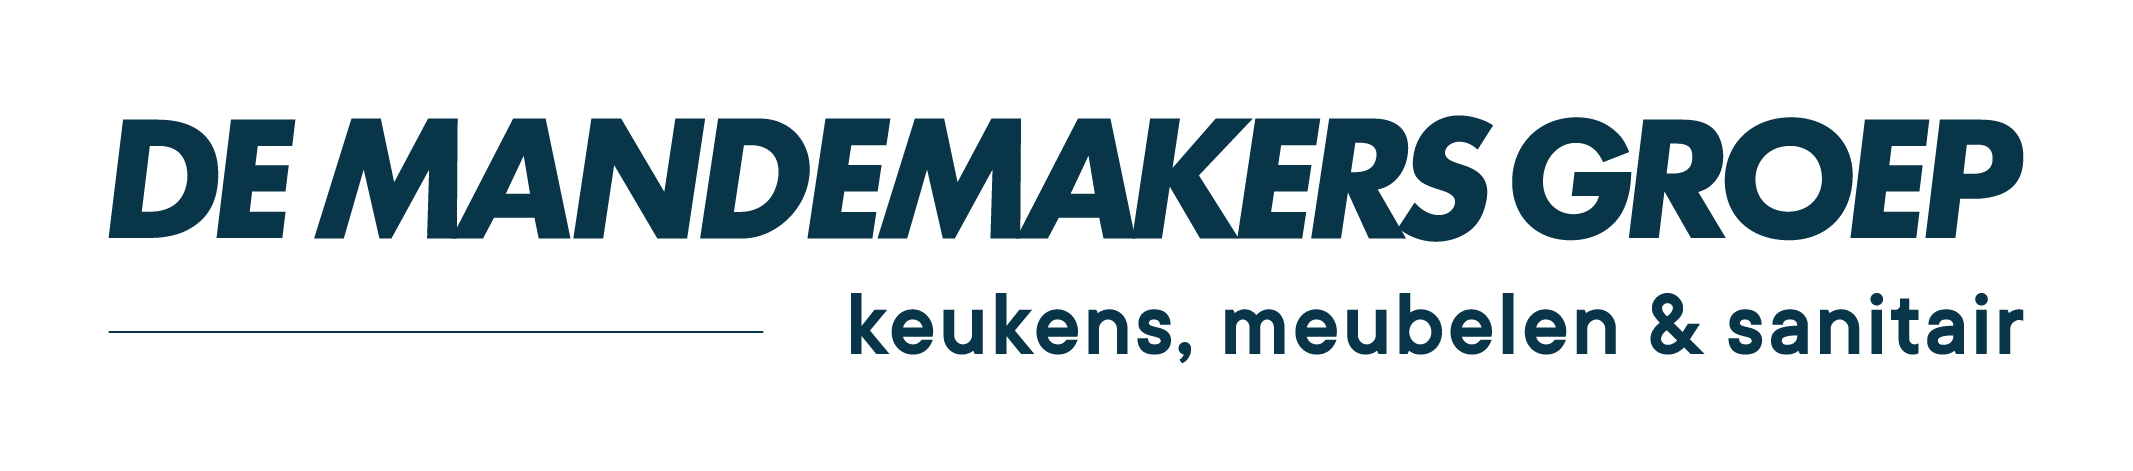 Logo of De Mandemakers Groep